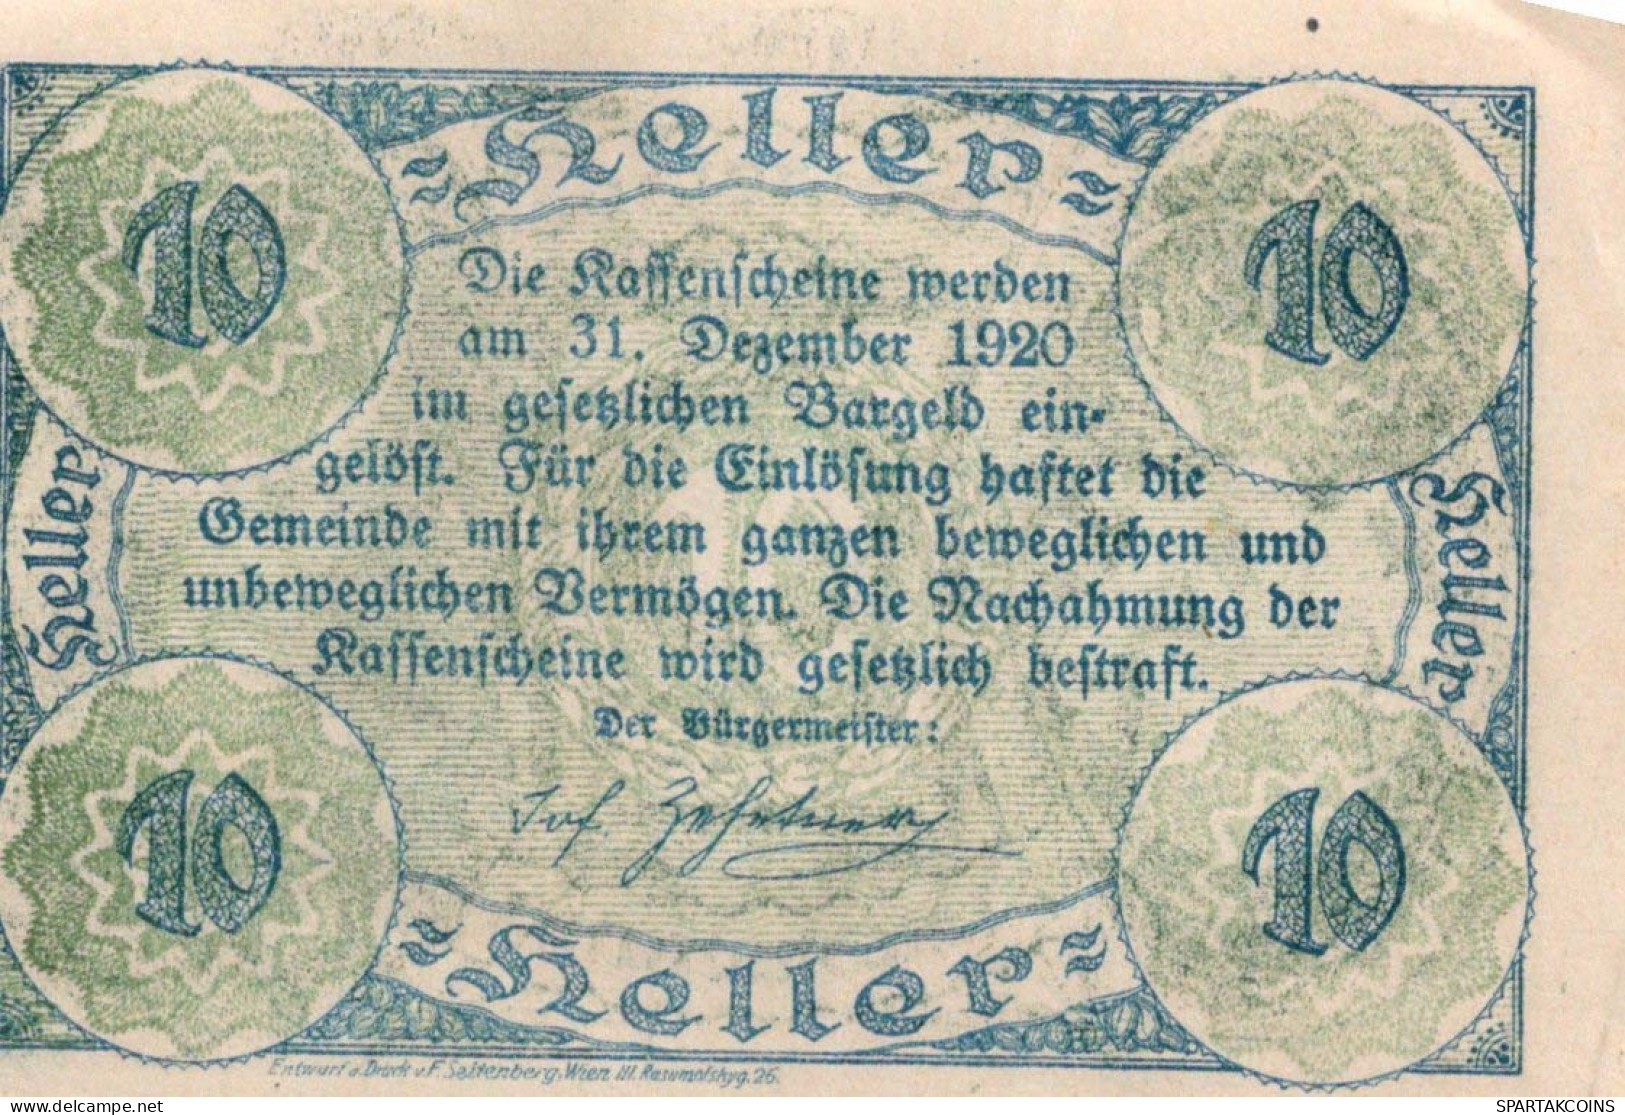 10 HELLER 1920 Stadt HAUSMENING Niedrigeren Österreich Notgeld Papiergeld Banknote #PG842 - [11] Emissions Locales